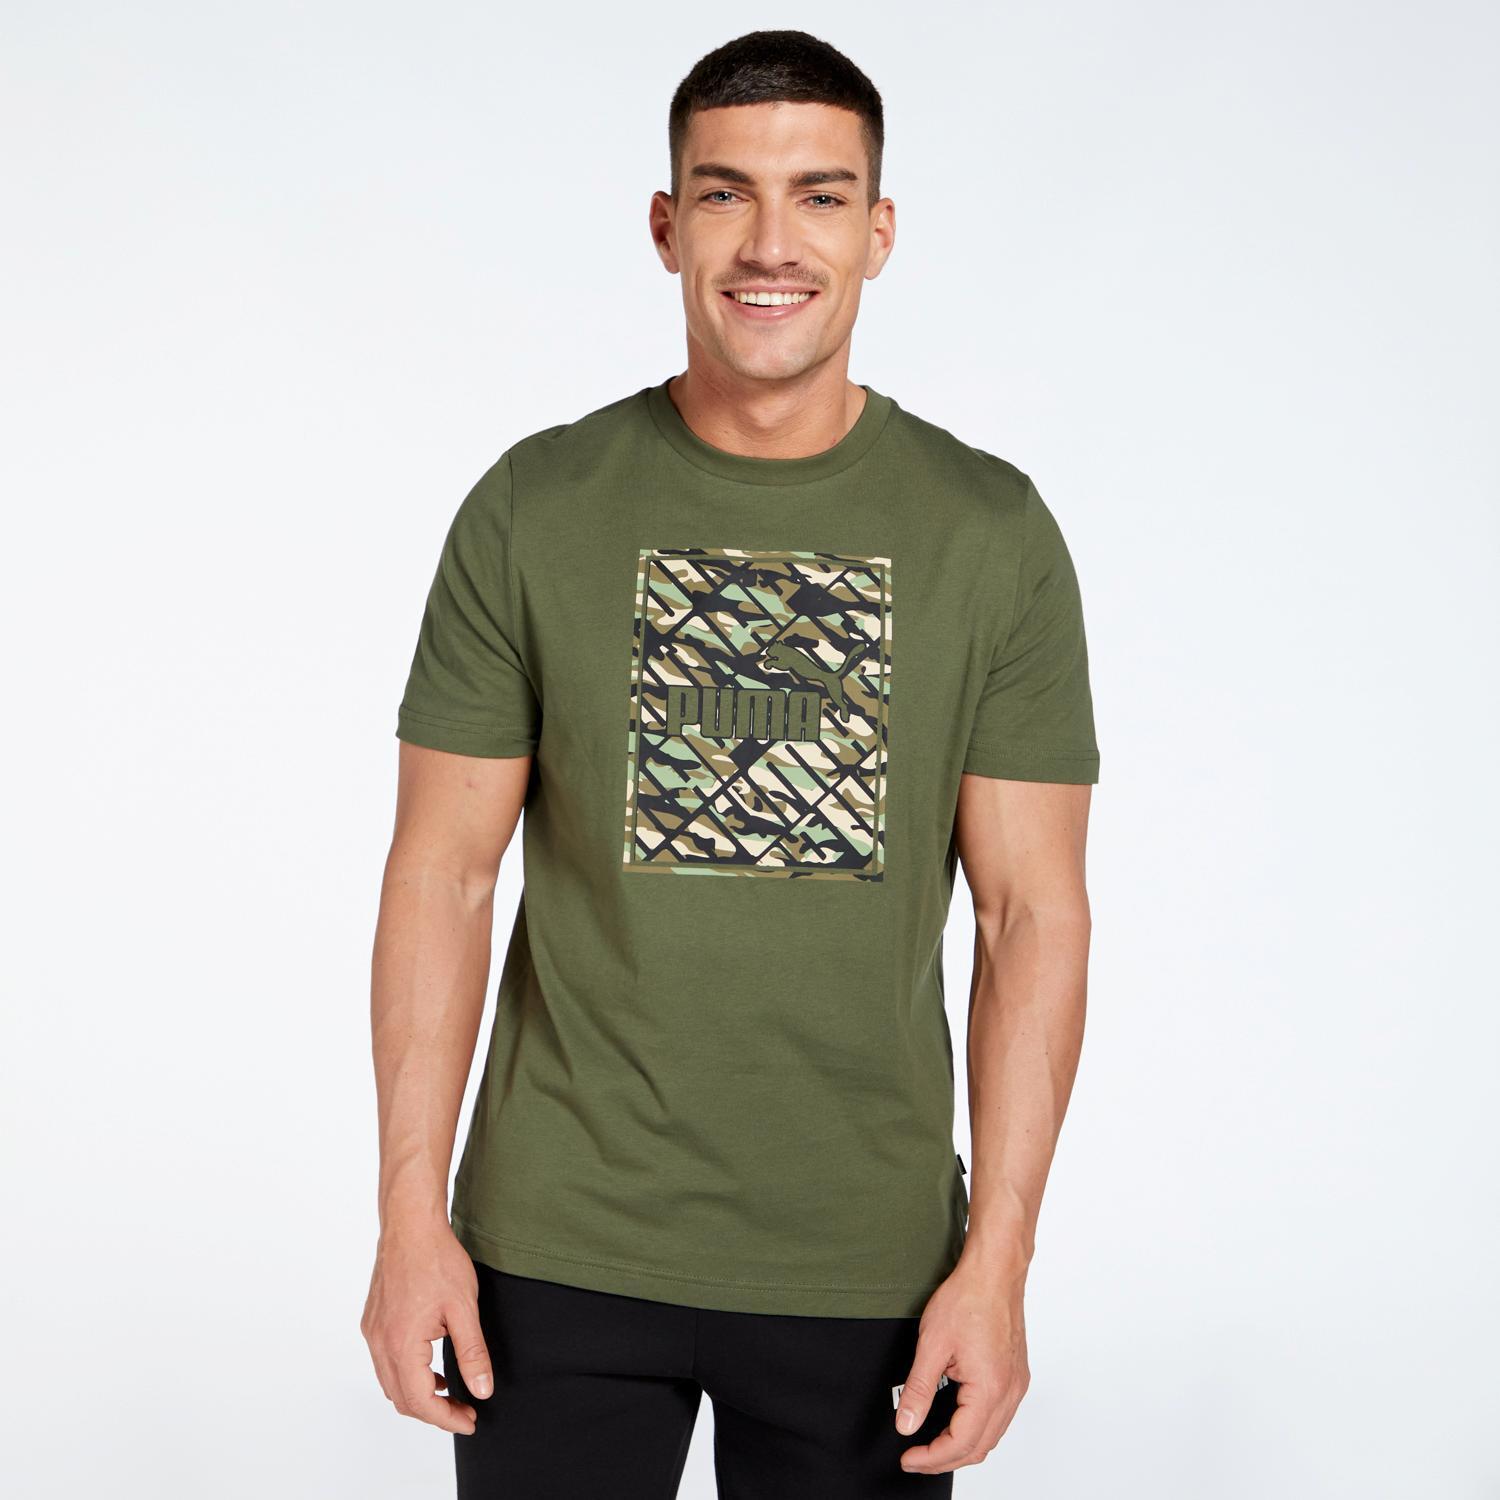 Puma T-shirt Groen T-shirt Heren